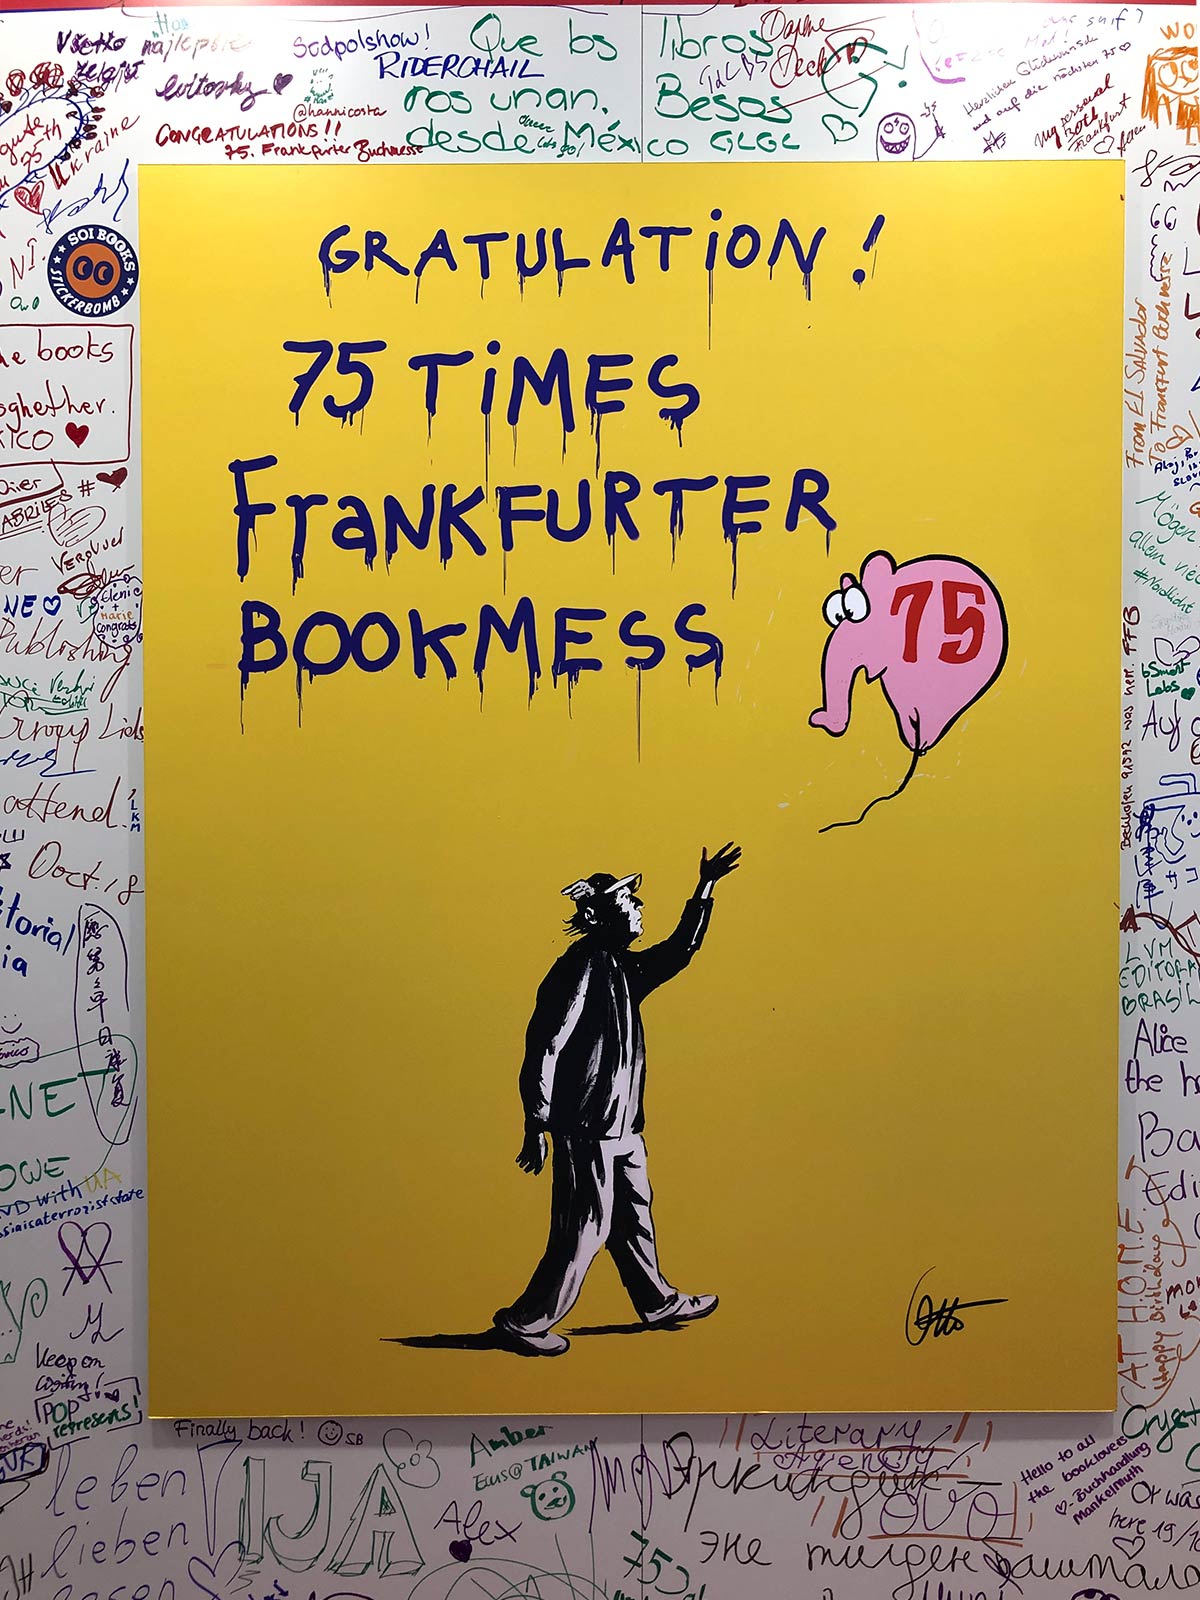 Otto Waalkes gratuliert im Stile von Banksy der Frankfurter Buchmesse zum 75. Geburtstag